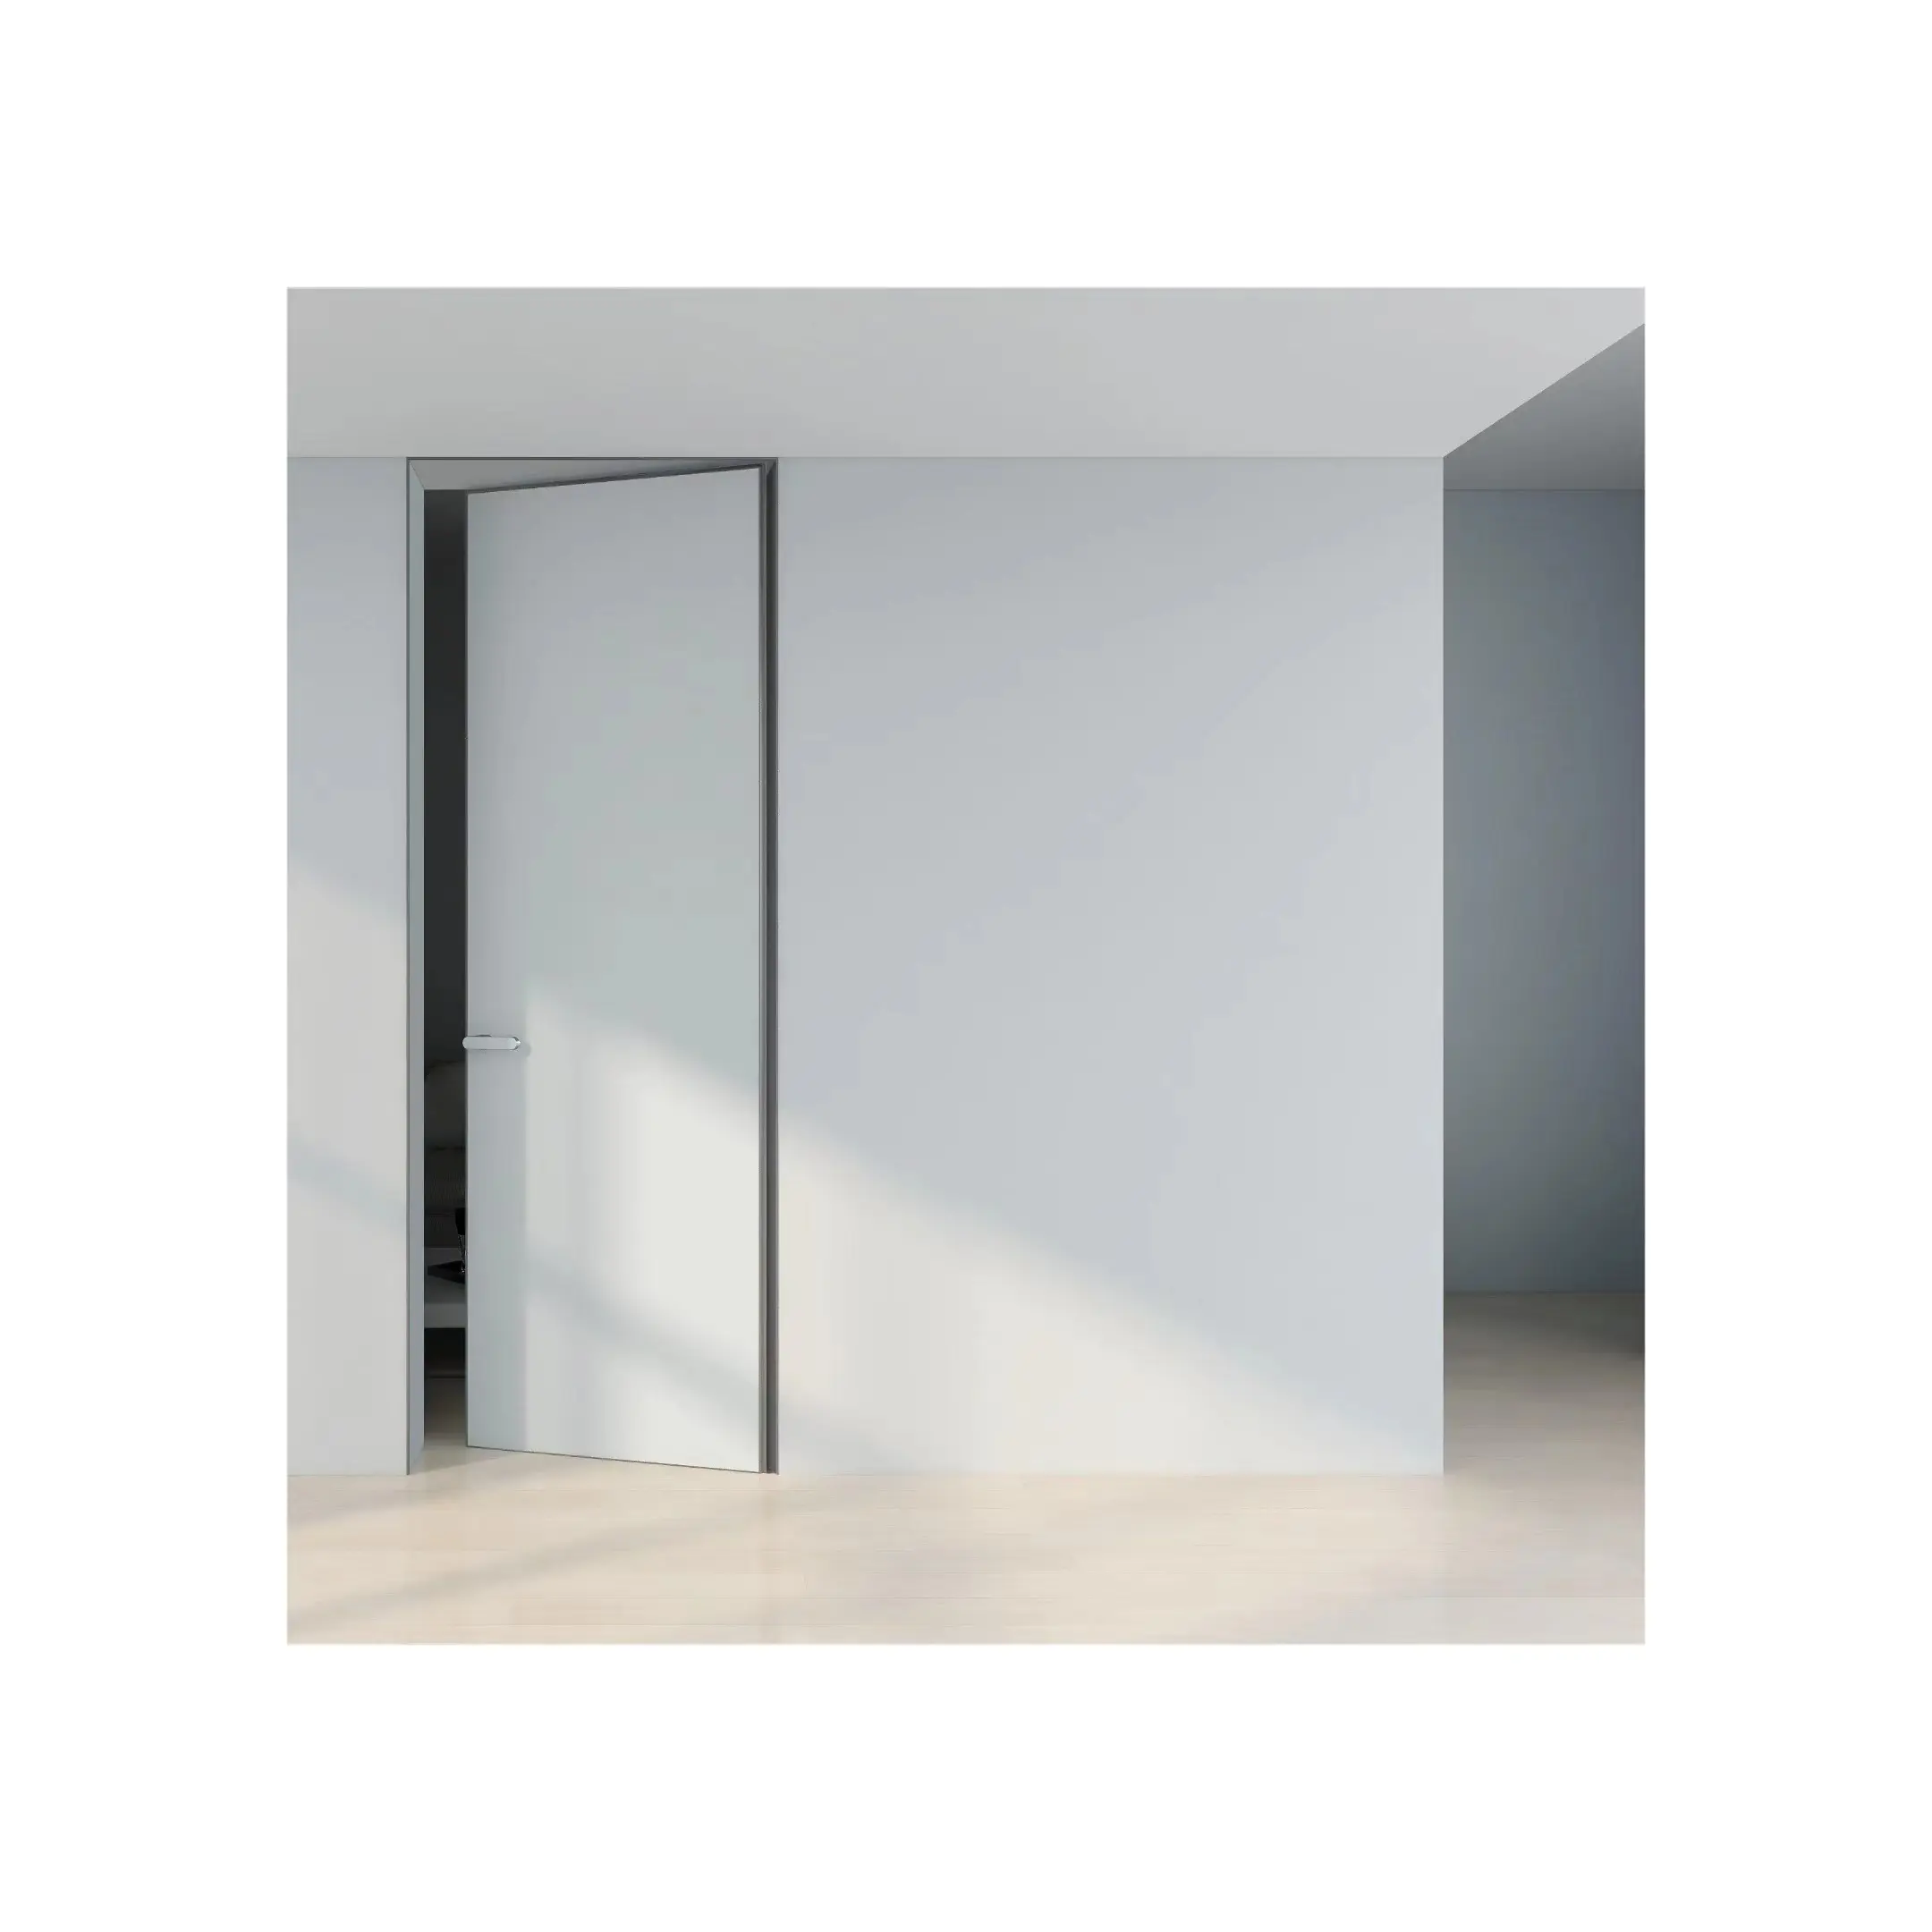 Unsichtbare Tür Mode Neuestes Design Holz Versteckte Wandt üren Aluminium rahmen Modernes Interieur Schlafzimmer Flush Rahmenlose Tür